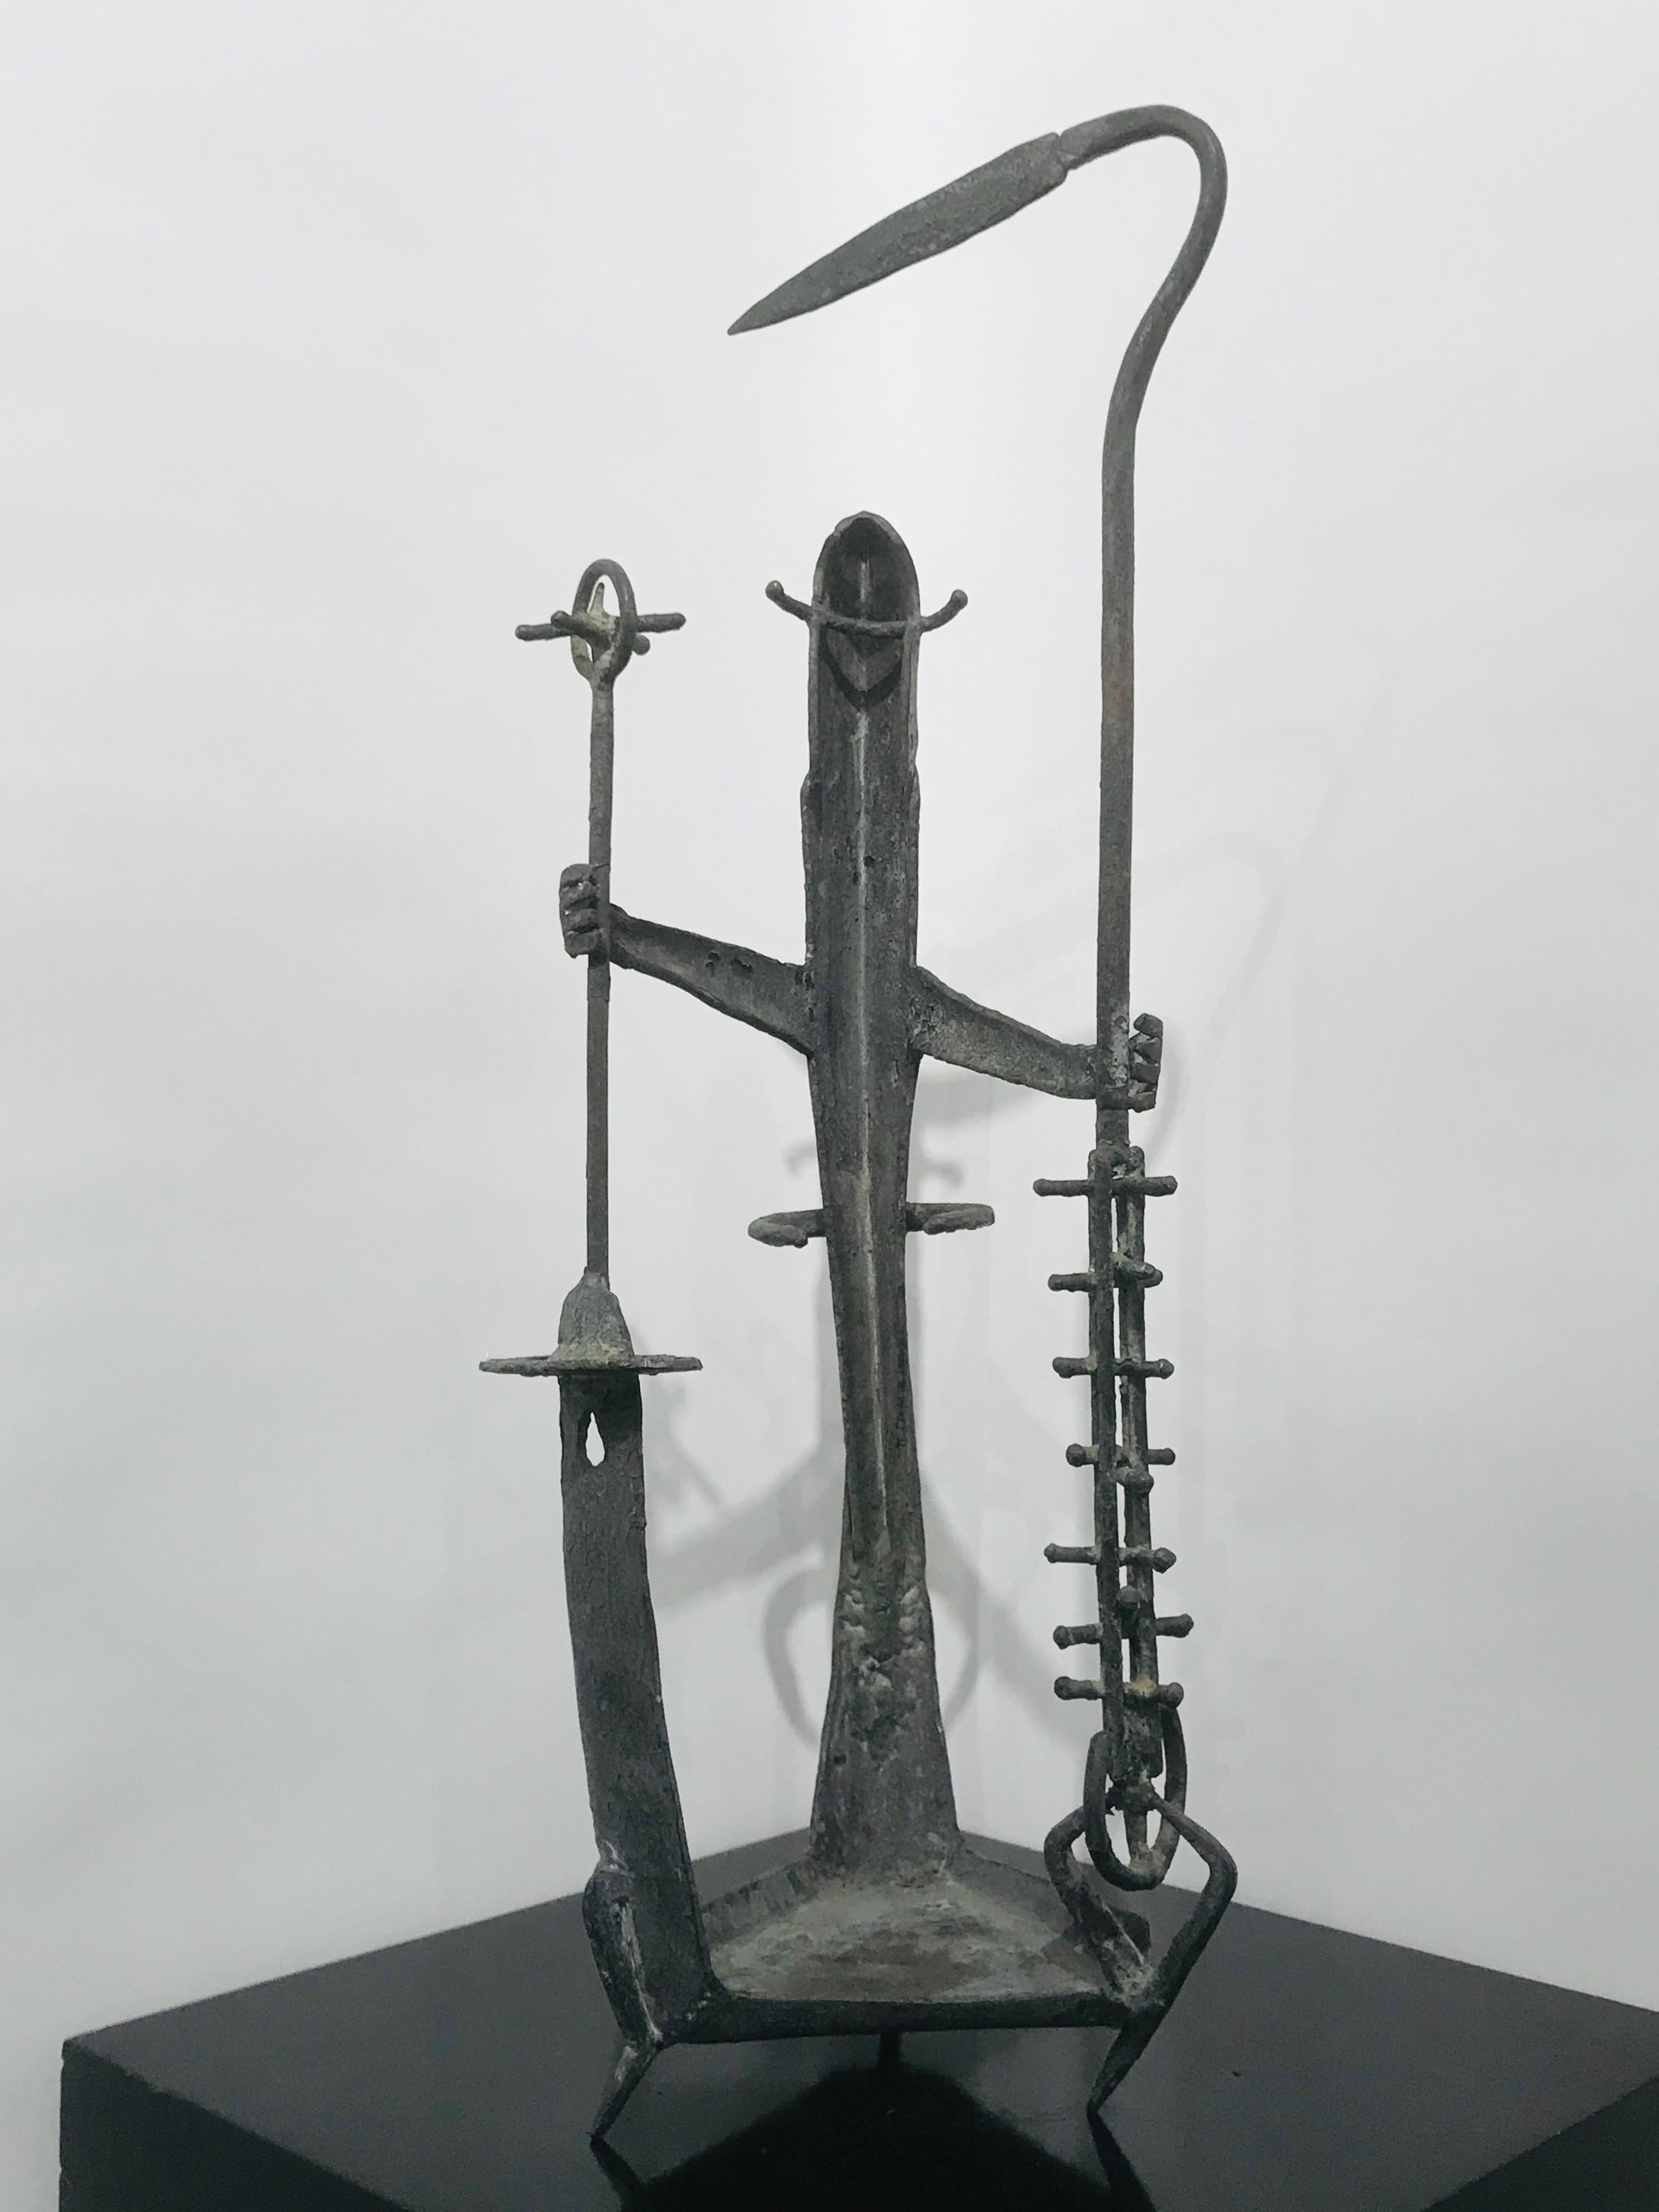 1907 - 2000
Tolerton était un artiste de la baie connu pour ses sculptures en fer. 
Ses œuvres ont été exposées au LACMA, au musée De Young, au musée d'Oakland, au musée de Denver et dans de nombreux autres lieux d'art.
Cette pièce est un bel